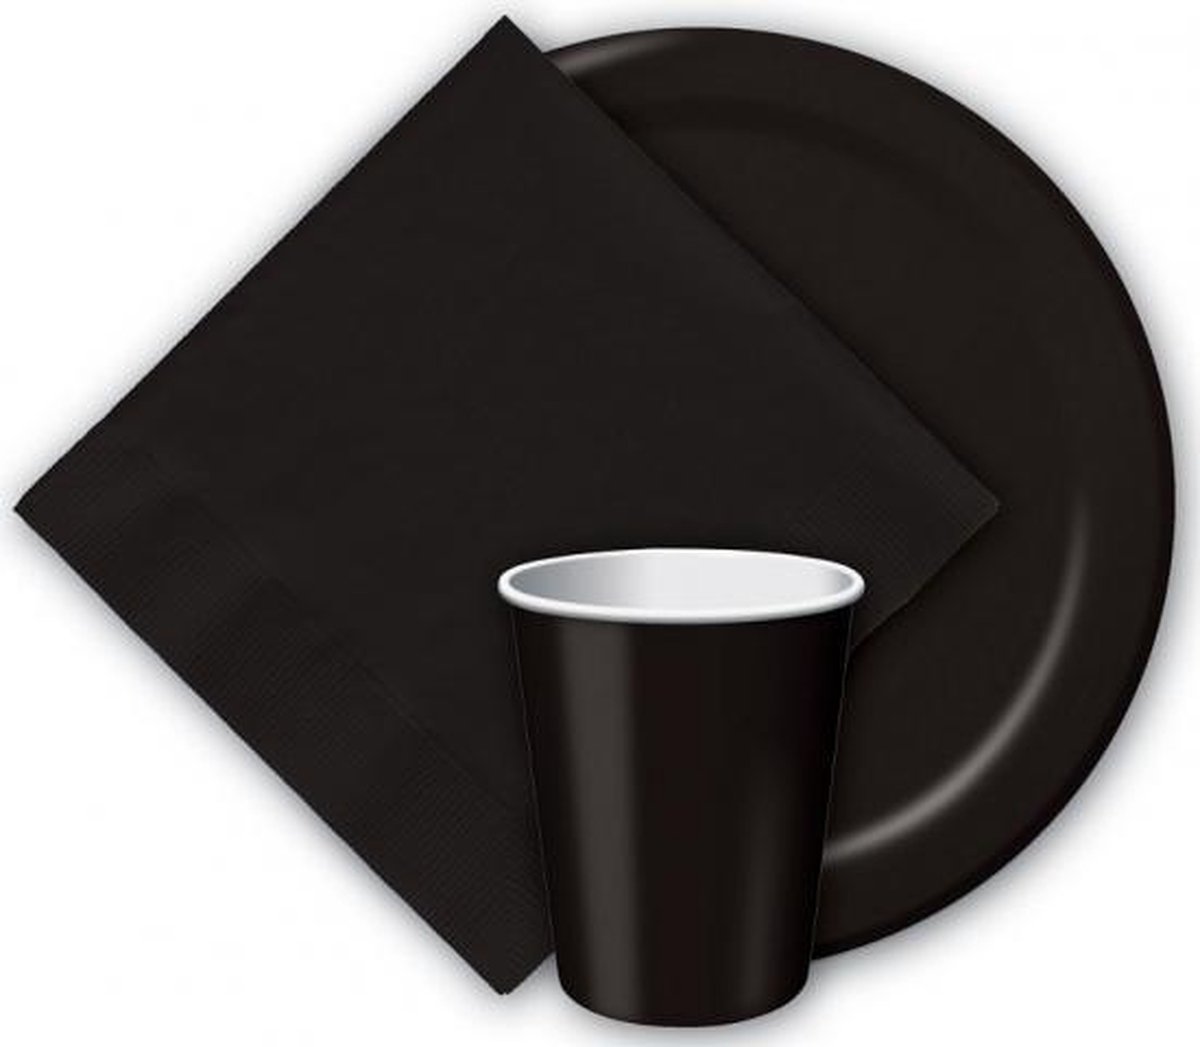 16x Zwarte papieren feest bekertjes 256 ml - Wegwerpbekertjes zwart van papier - Halloween/themafeest tafeldecoratie